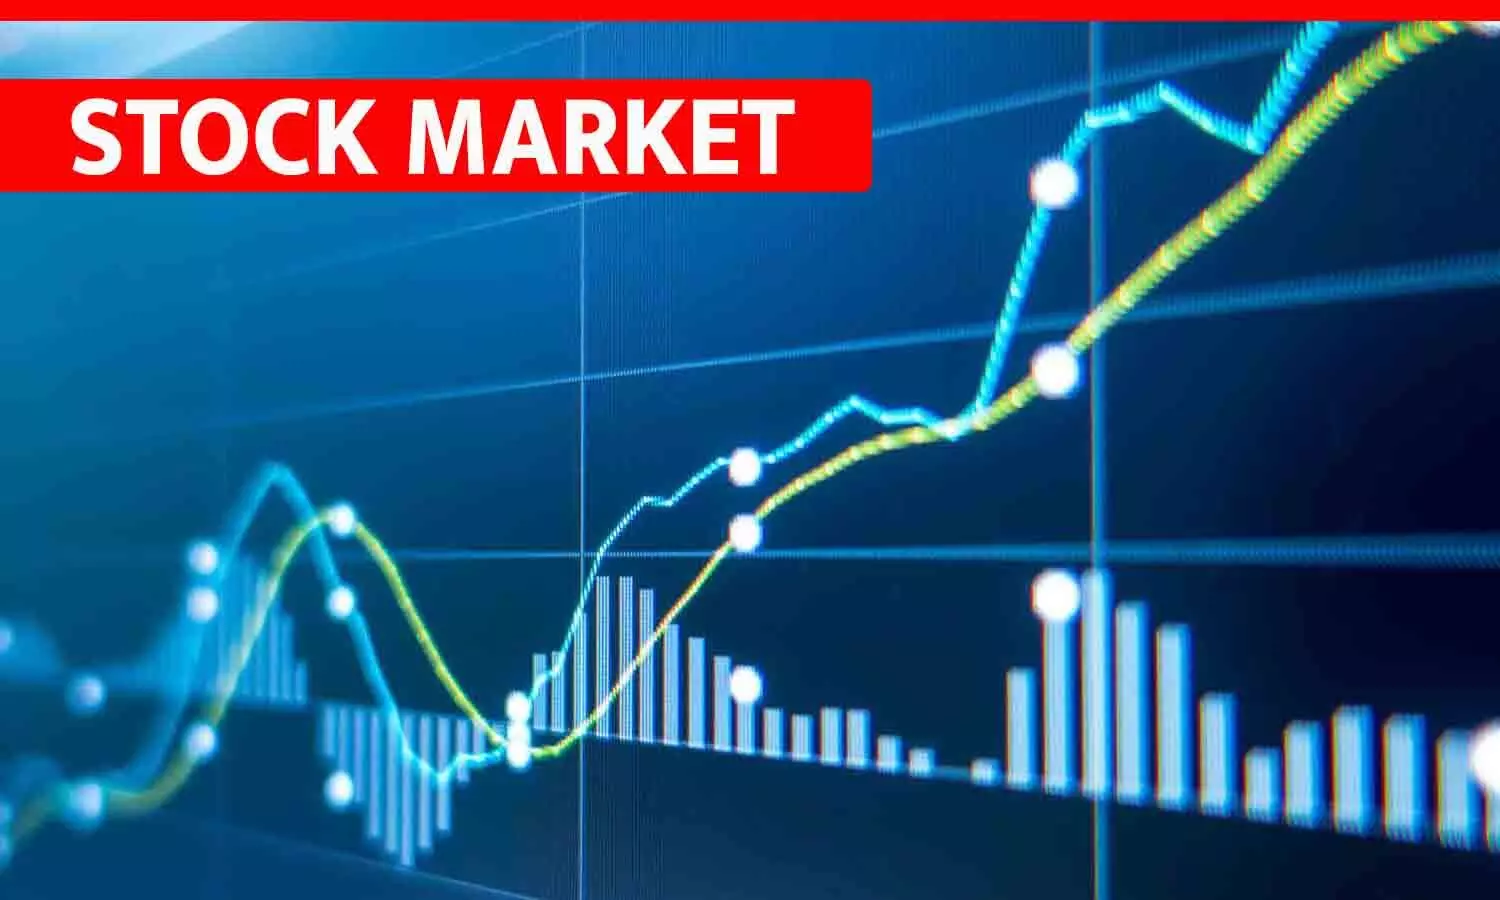 STOCK MARKET: सेंसेक्स 80 हजार के पार, निफ्टी 24,292 पर पहुंचे; बैंकिंग, मेटल और ऑटो शेयर्स में तेजी